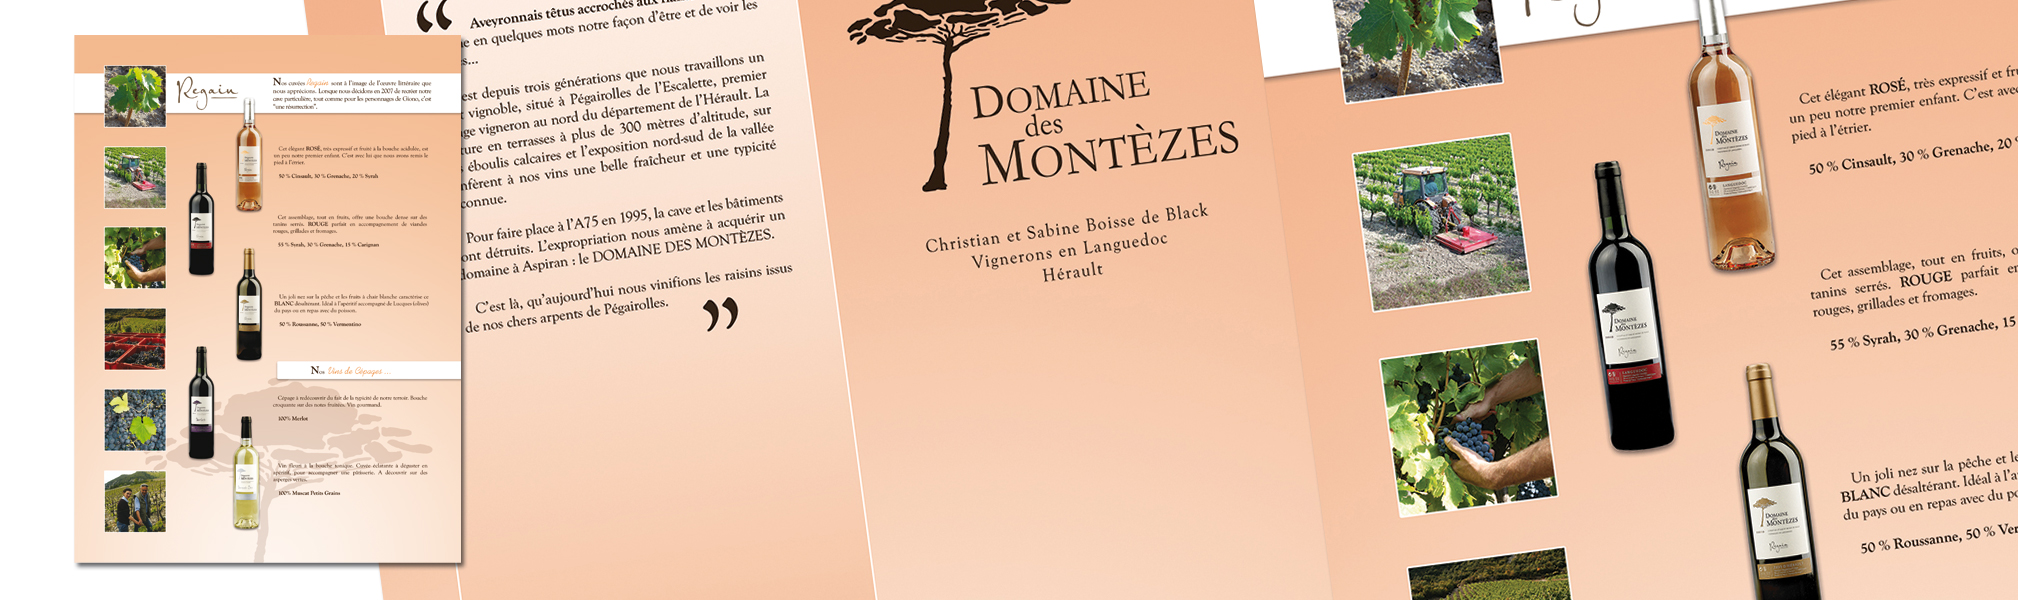 Domaine des Montèzes - Brochure Français-Anglais